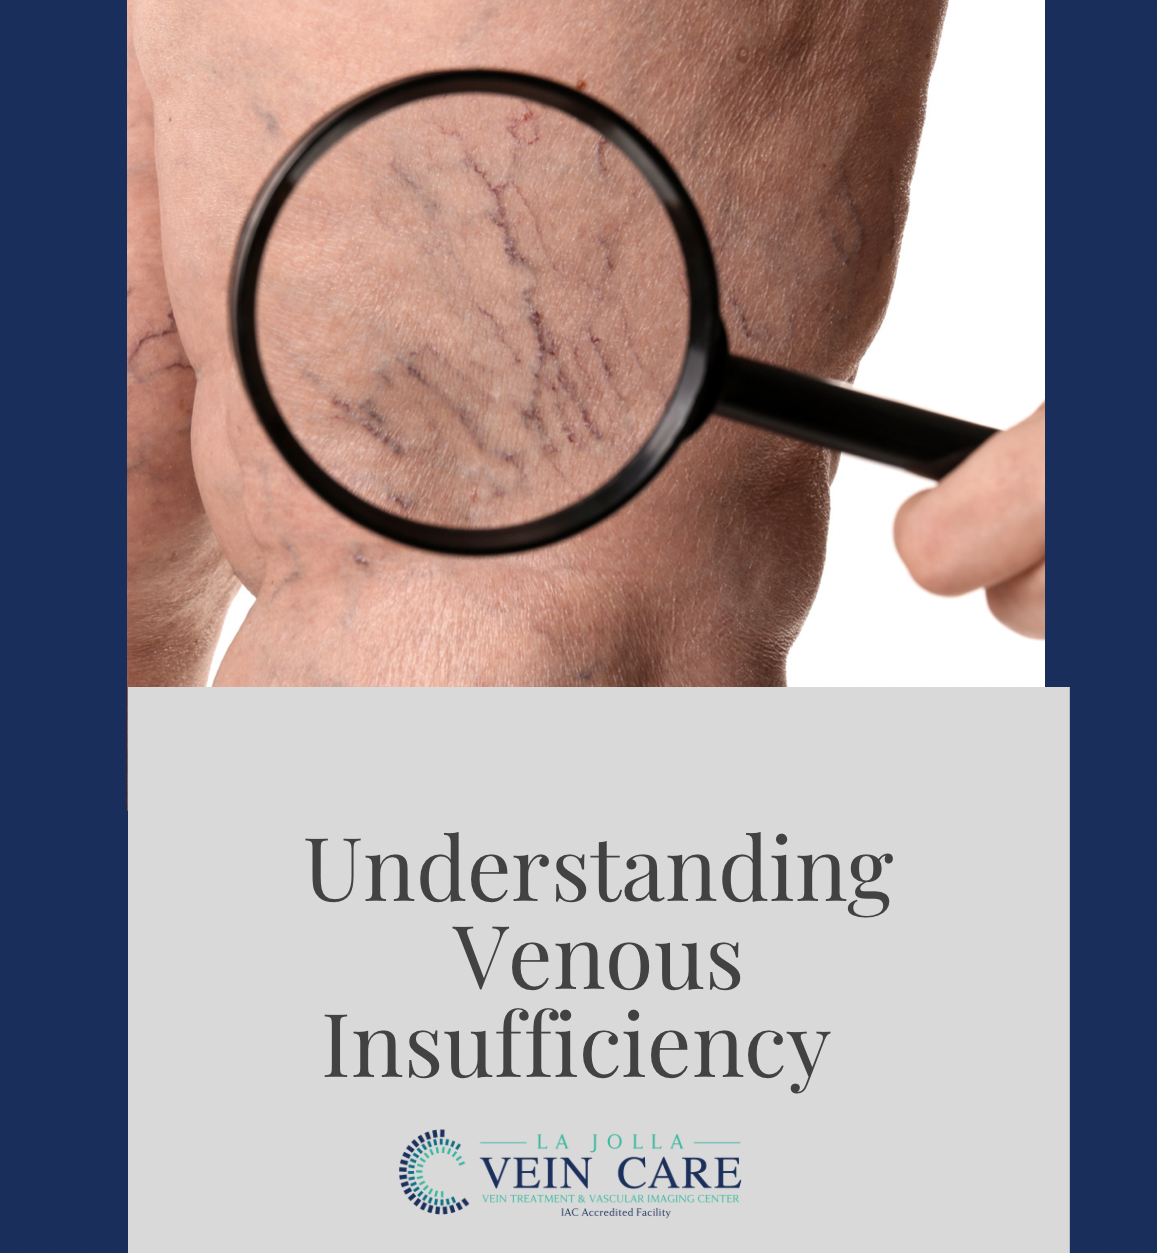 venous insufficiency